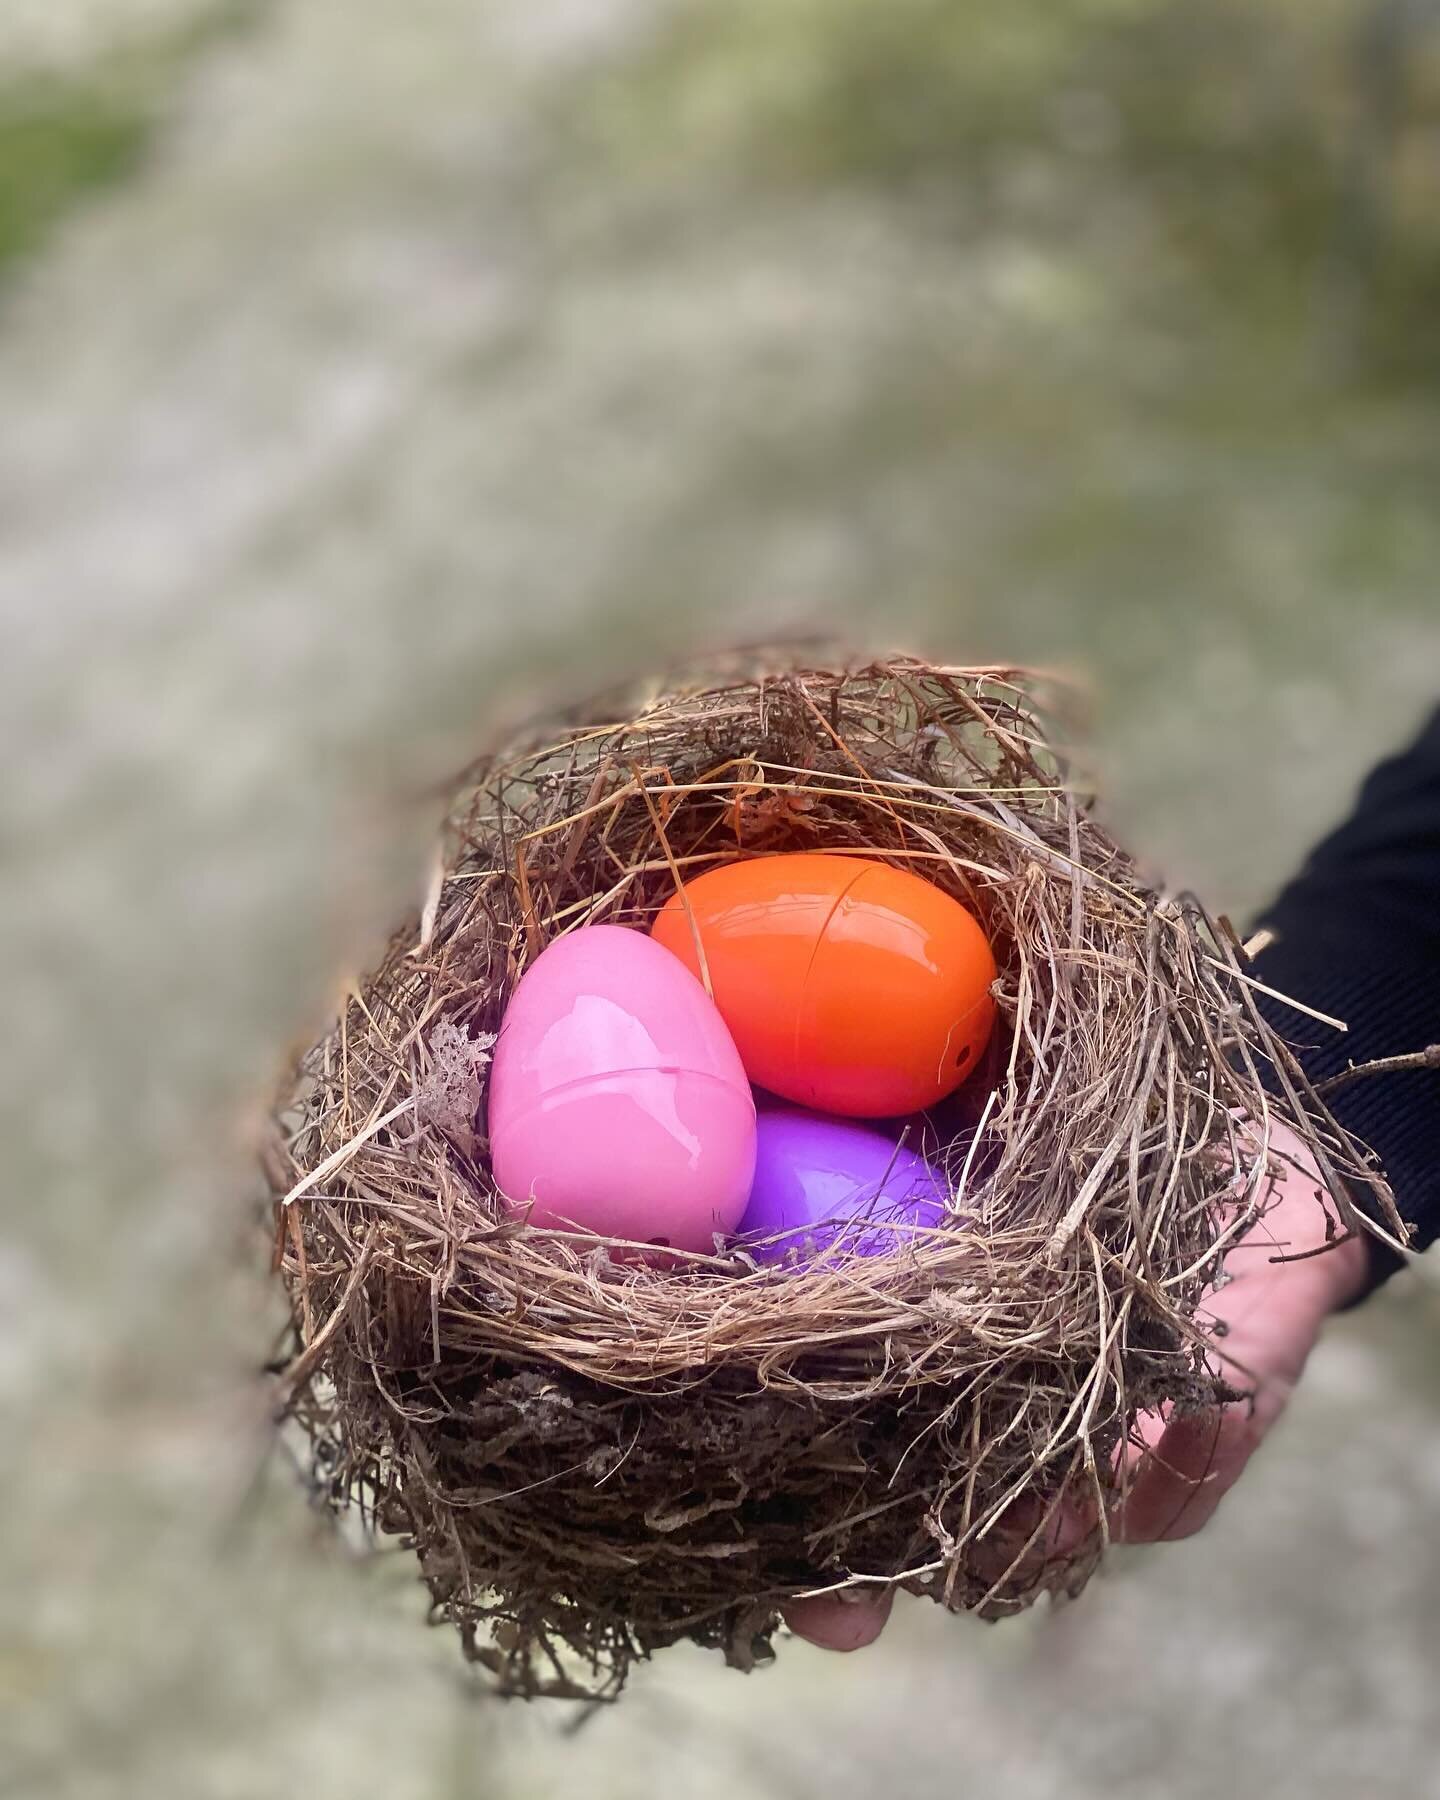 Com&rsquo;&egrave; andata l&rsquo;Easter Egg Hunt? Ve la raccontiamo con la filastrocca usata per gli indizi. 300 uova nascoste, 20+ piccoli e piccole partecipanti, un sacco di sorprese e una super merenda. 
Buona Pasqua 🥚🥰 di uova a tutti e tutte.